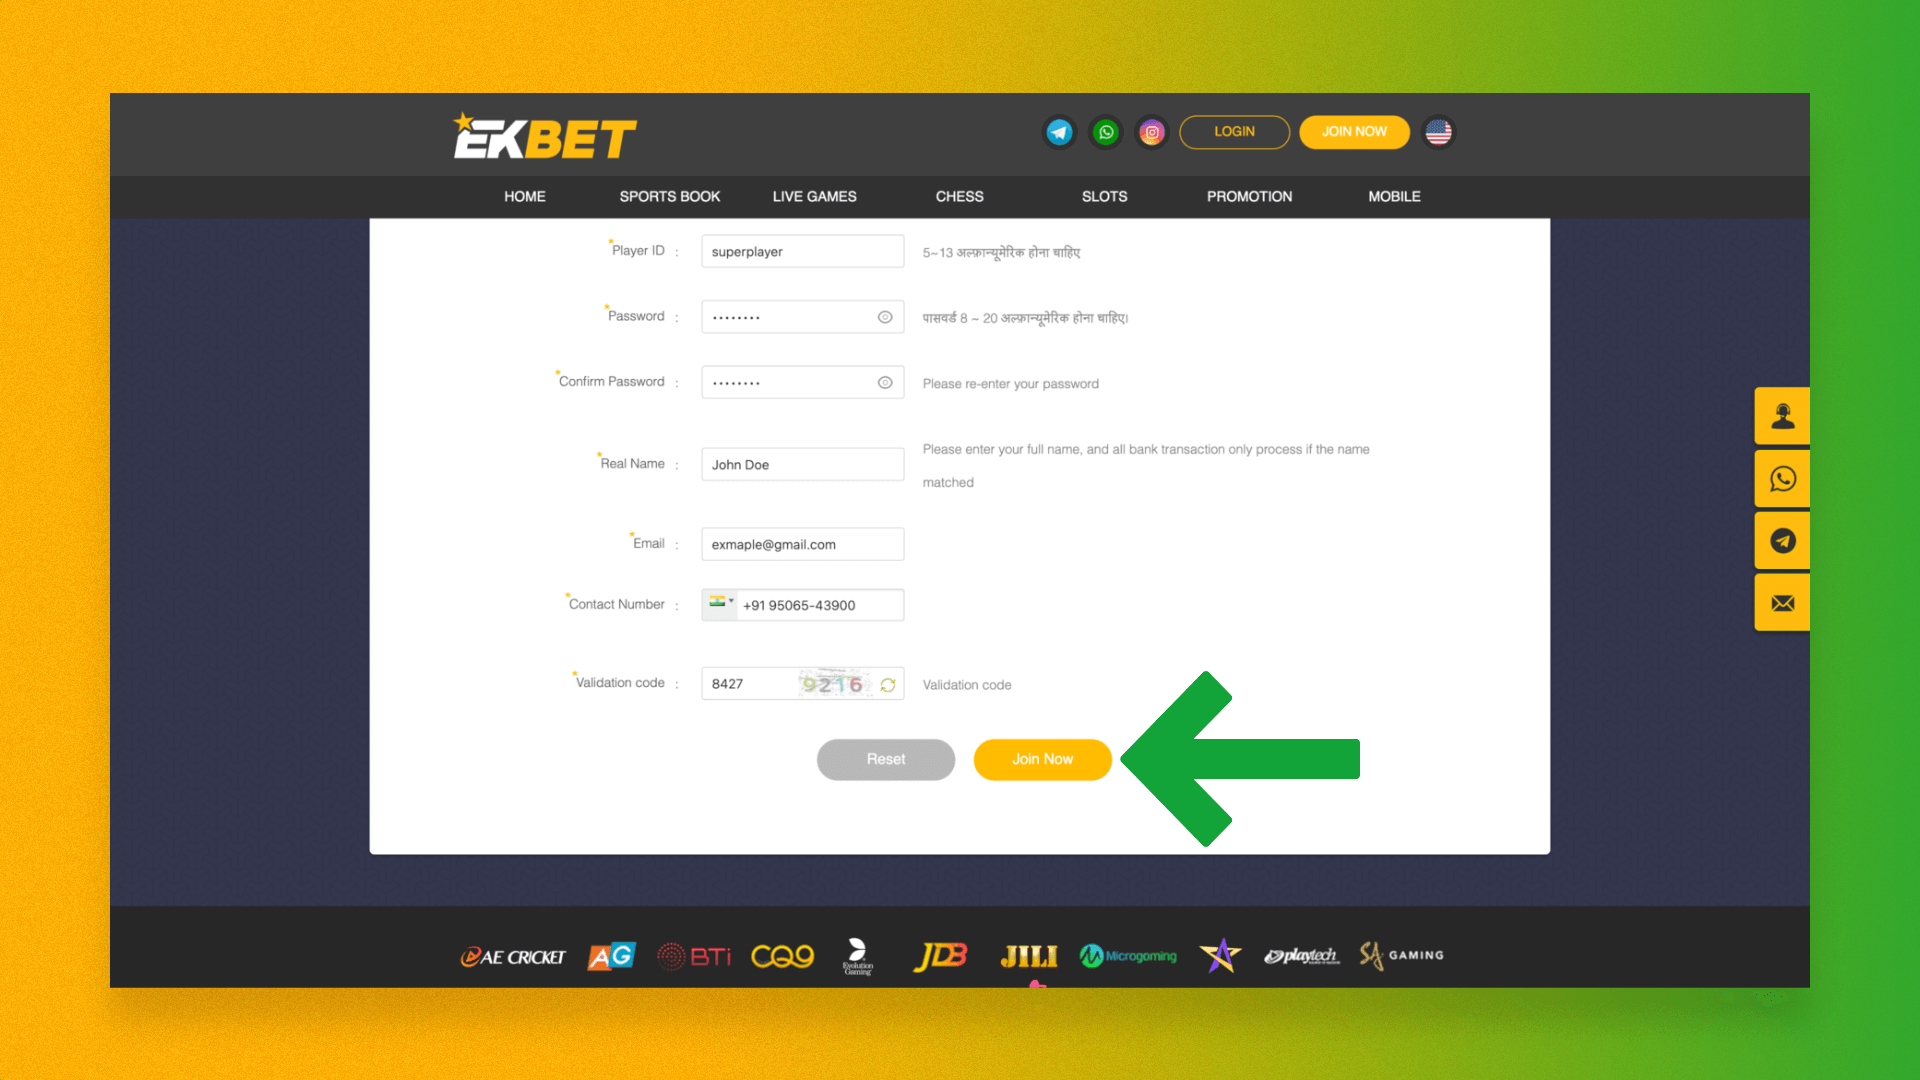 Confirmation of new user registration on the Ekbet platform